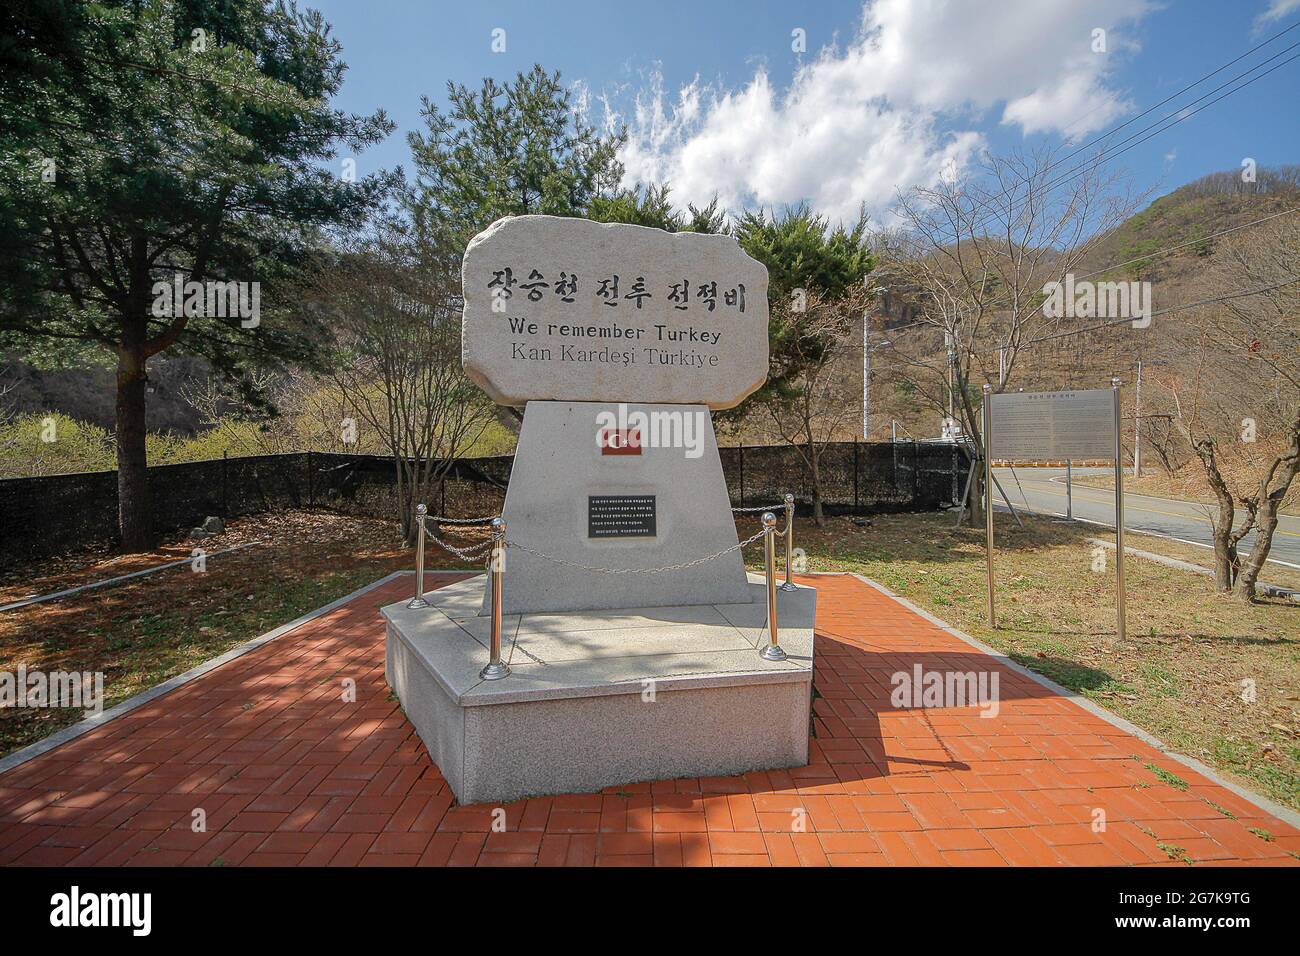 11 de abril de 2018-Goyang, Corea del Sur-Una vista de Jangseung chun monumento de la batalla memoris en Cheorwon, Corea del Sur. La batalla de JangseungChun fue la operación exitosa realizada del 22nd al 23rd de abril de 1951. Fue ejecutado por el Ejército Turco asignado a la división de 25th del Ejército de los Estados Unidos. La operación se llevó a cabo hoy en día en la zona operativa de la división de Corea del Sur de 5th. La batalla de Jangseungchun recibe su nombre citando el nombre de Jang Seung Stream, que fluye a través del valle de Dong-mak. Es triste, sin embargo, que 65 murieron, 105 desaparecieron y 35 fueron heridos en el batallón Foto de stock